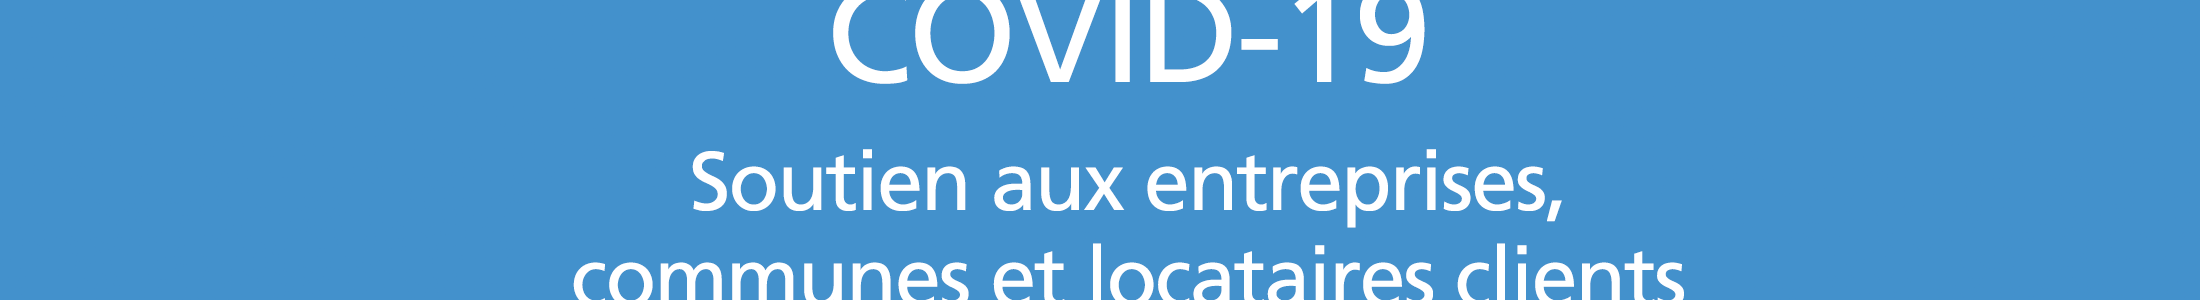 COVID-19 : dispositif de soutien destiné aux entreprises, communes et locataires clients